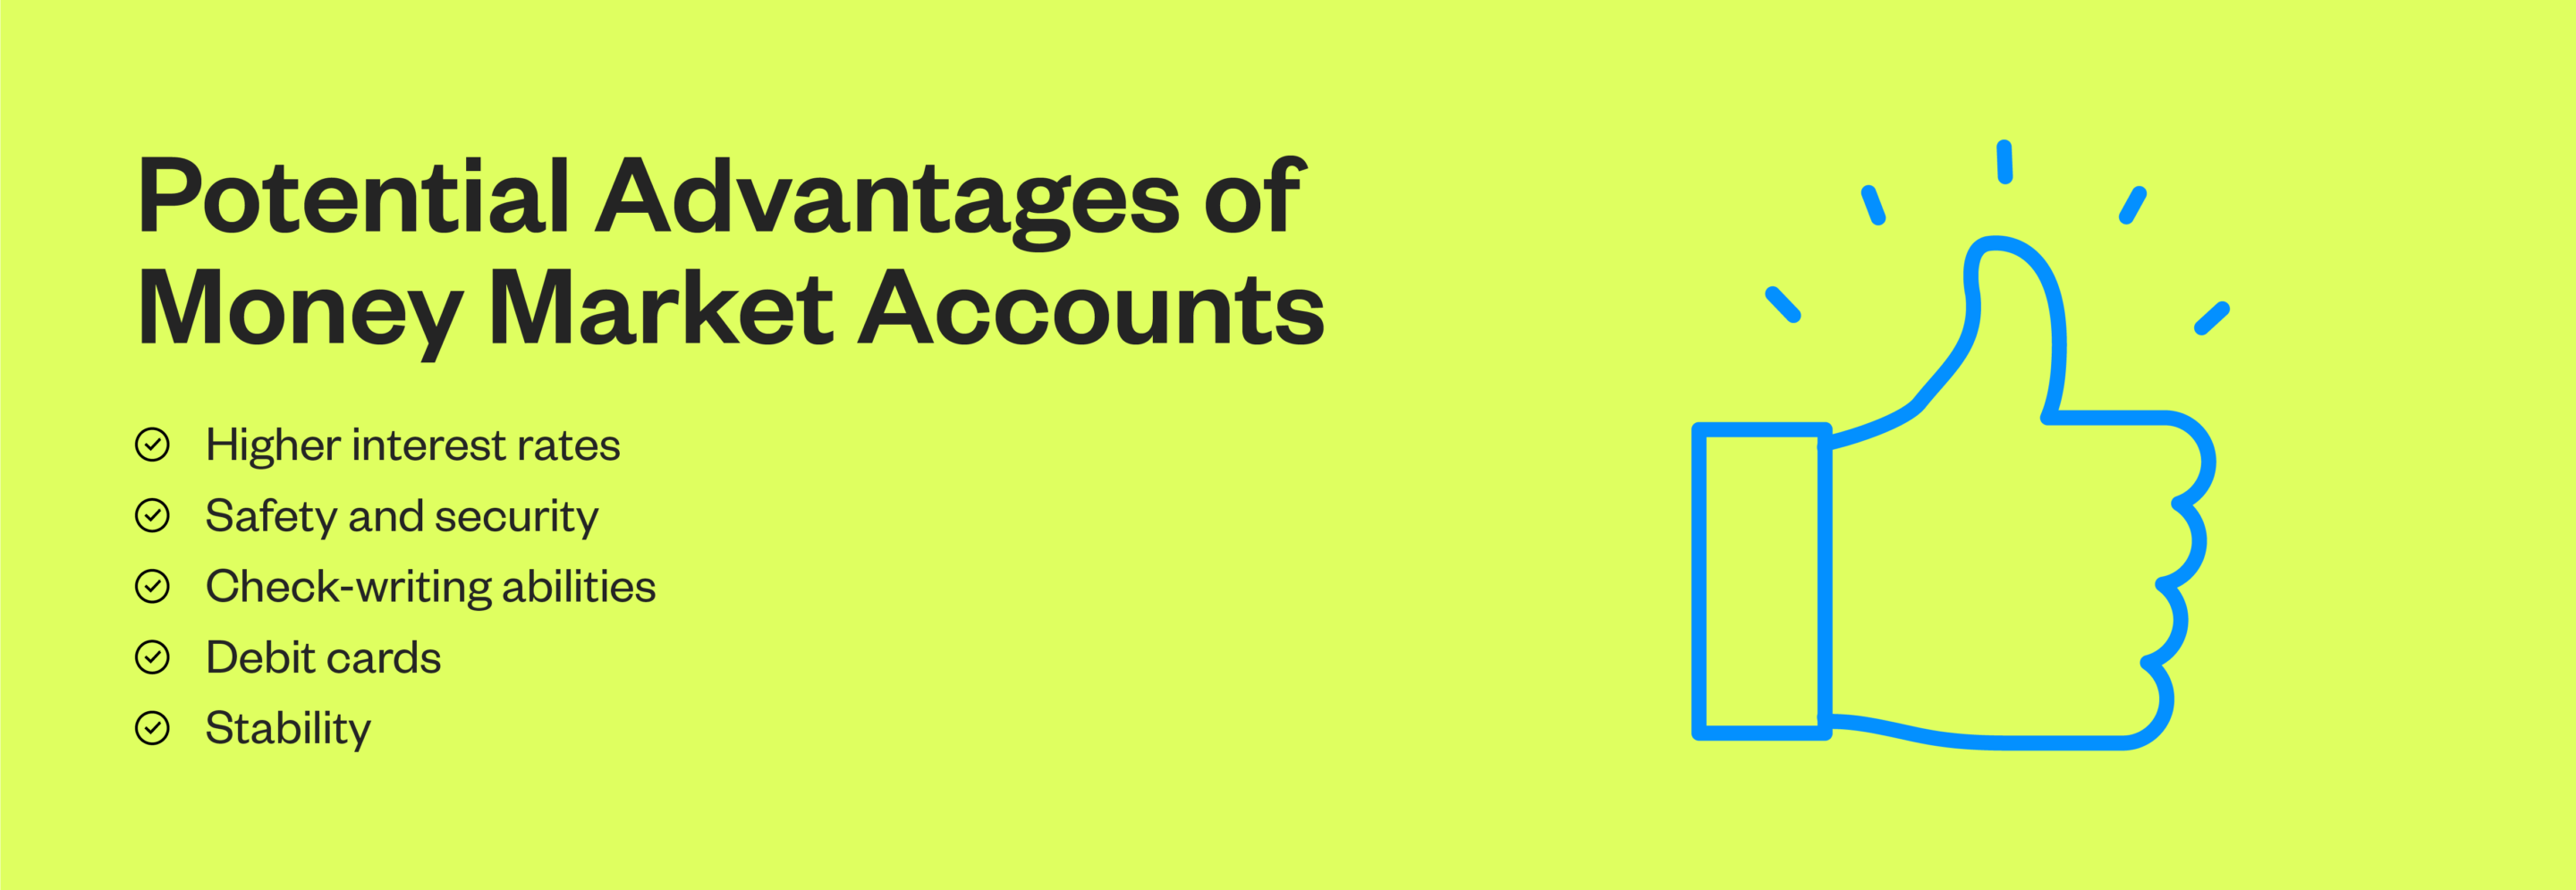 Money market accounts vs. alternative accounts